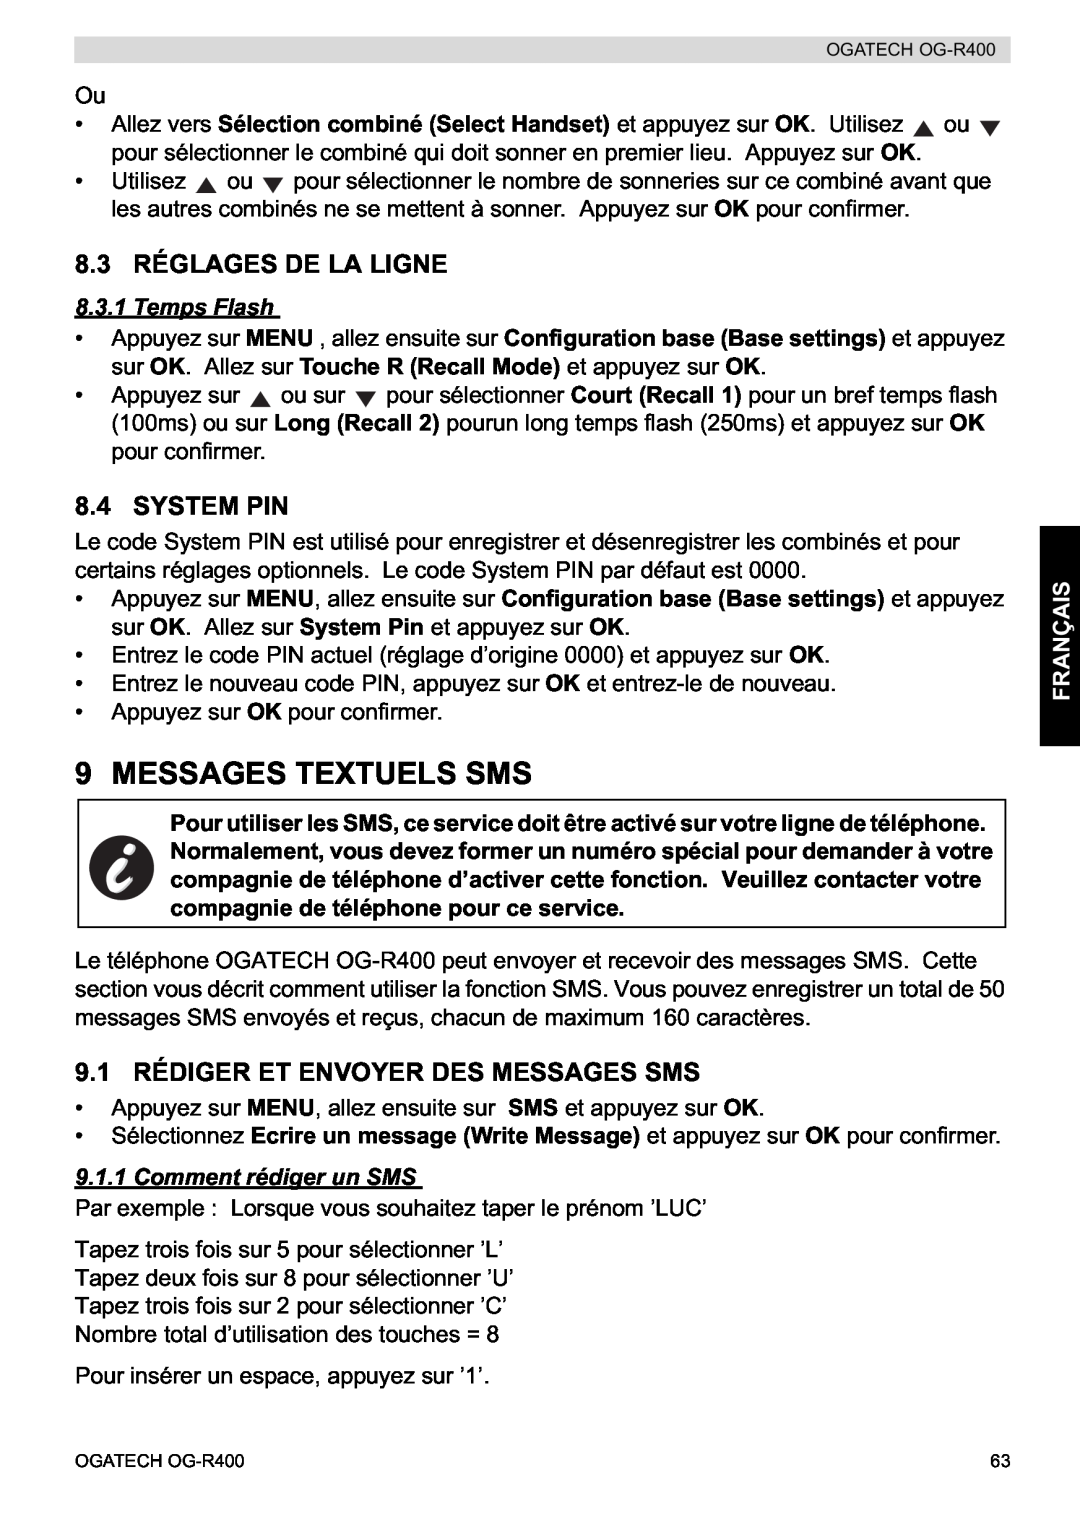 Topcom OG-R400 manual Messages Textuels Sms, 8.3 RÉGLAGES DE LA LIGNE, 9.1 RÉDIGER ET ENVOYER DES MESSAGES SMS, Temps Flash 